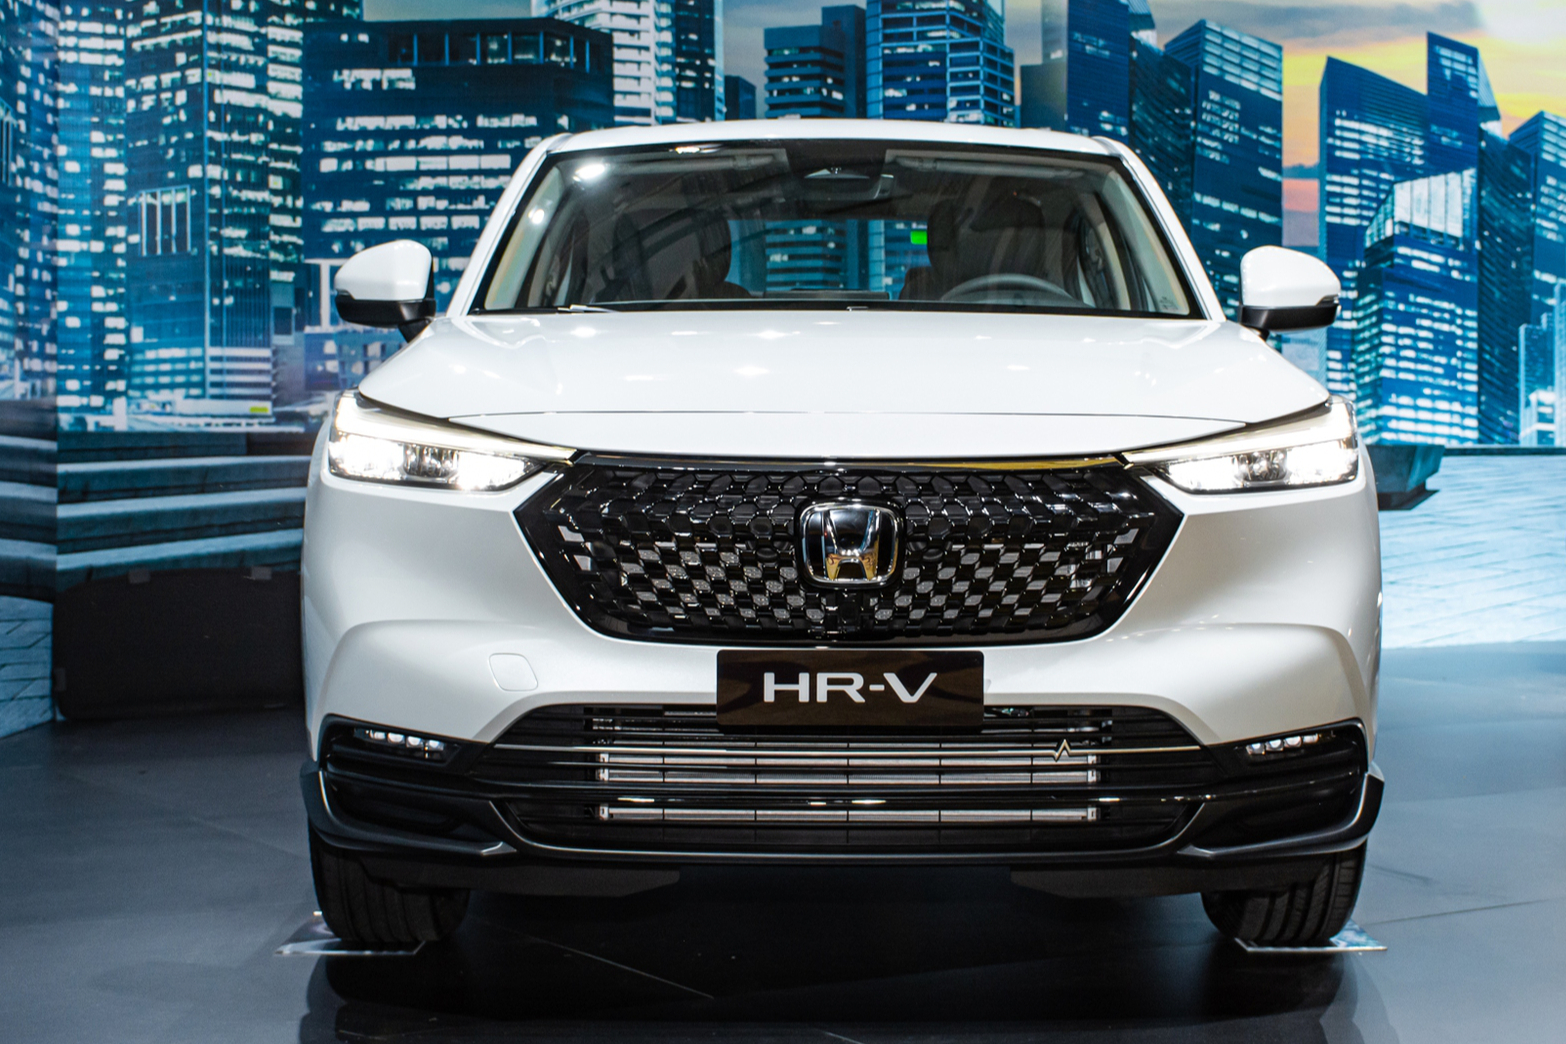 Honda ra mắt SUV nhỏ gọn HRV tại Thái Lan giá từ 579 triệu đồng   CafeAutoVn